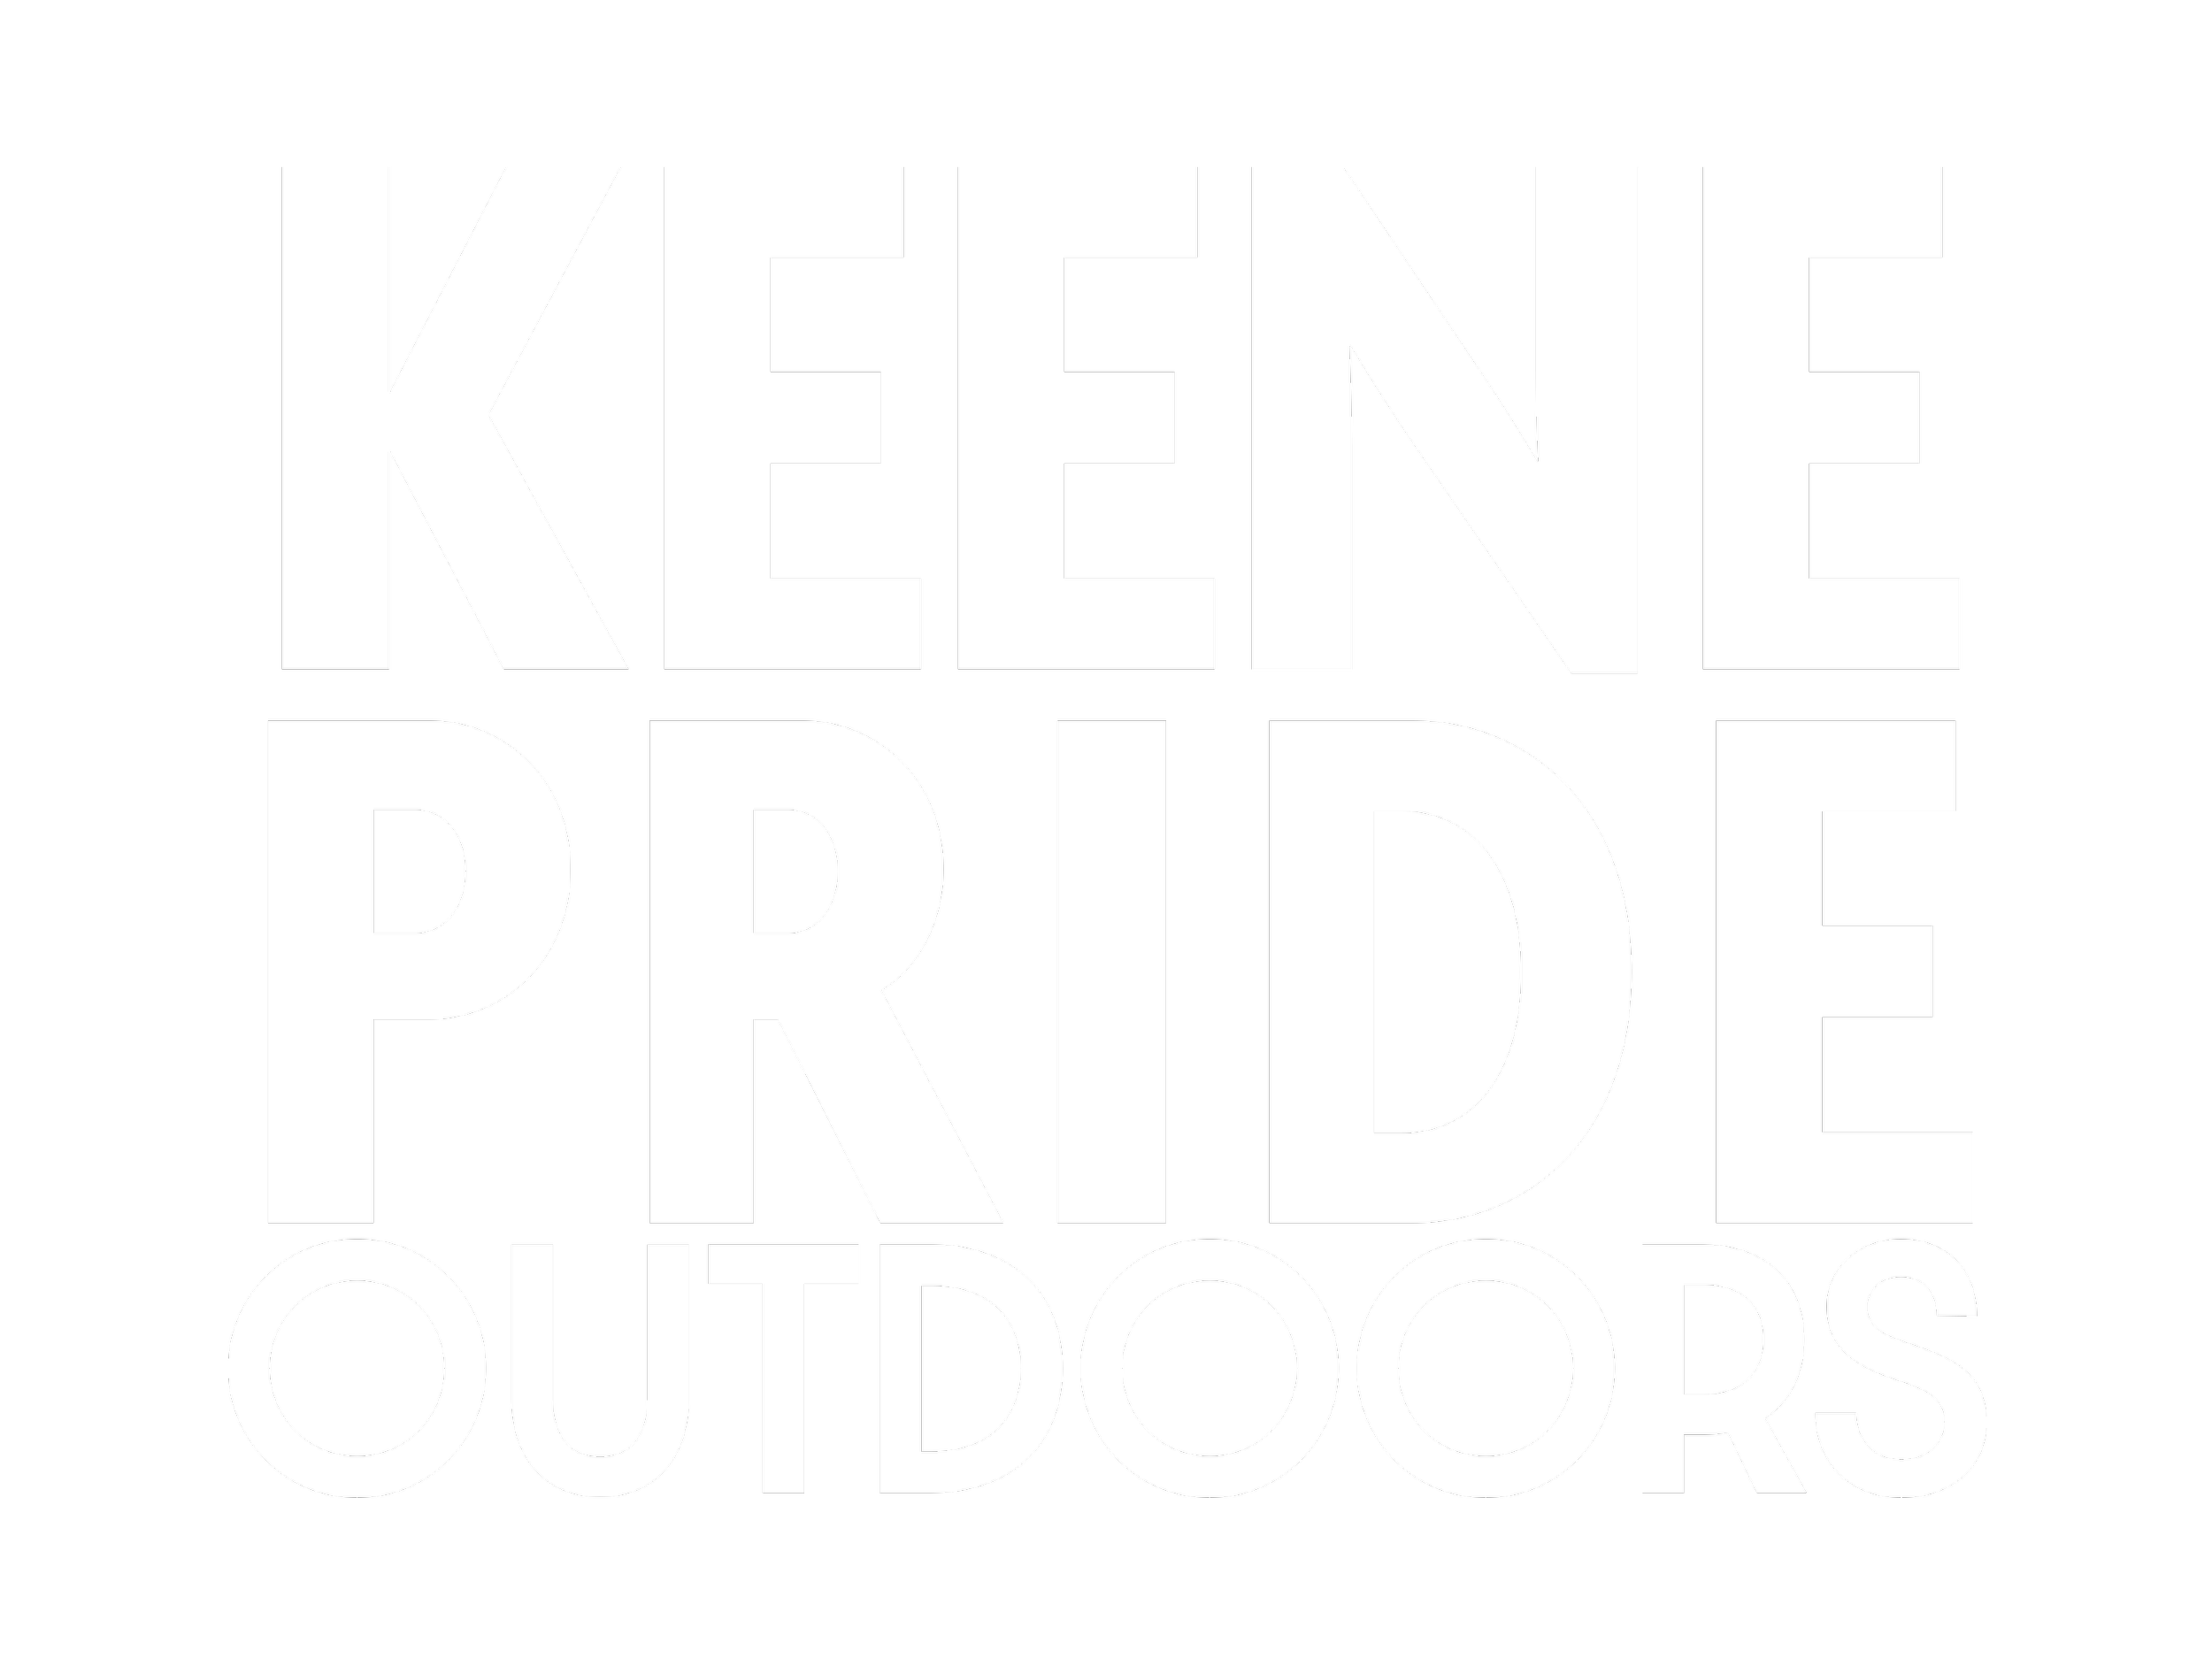 Keene Pride Outdoors — Keene Pride